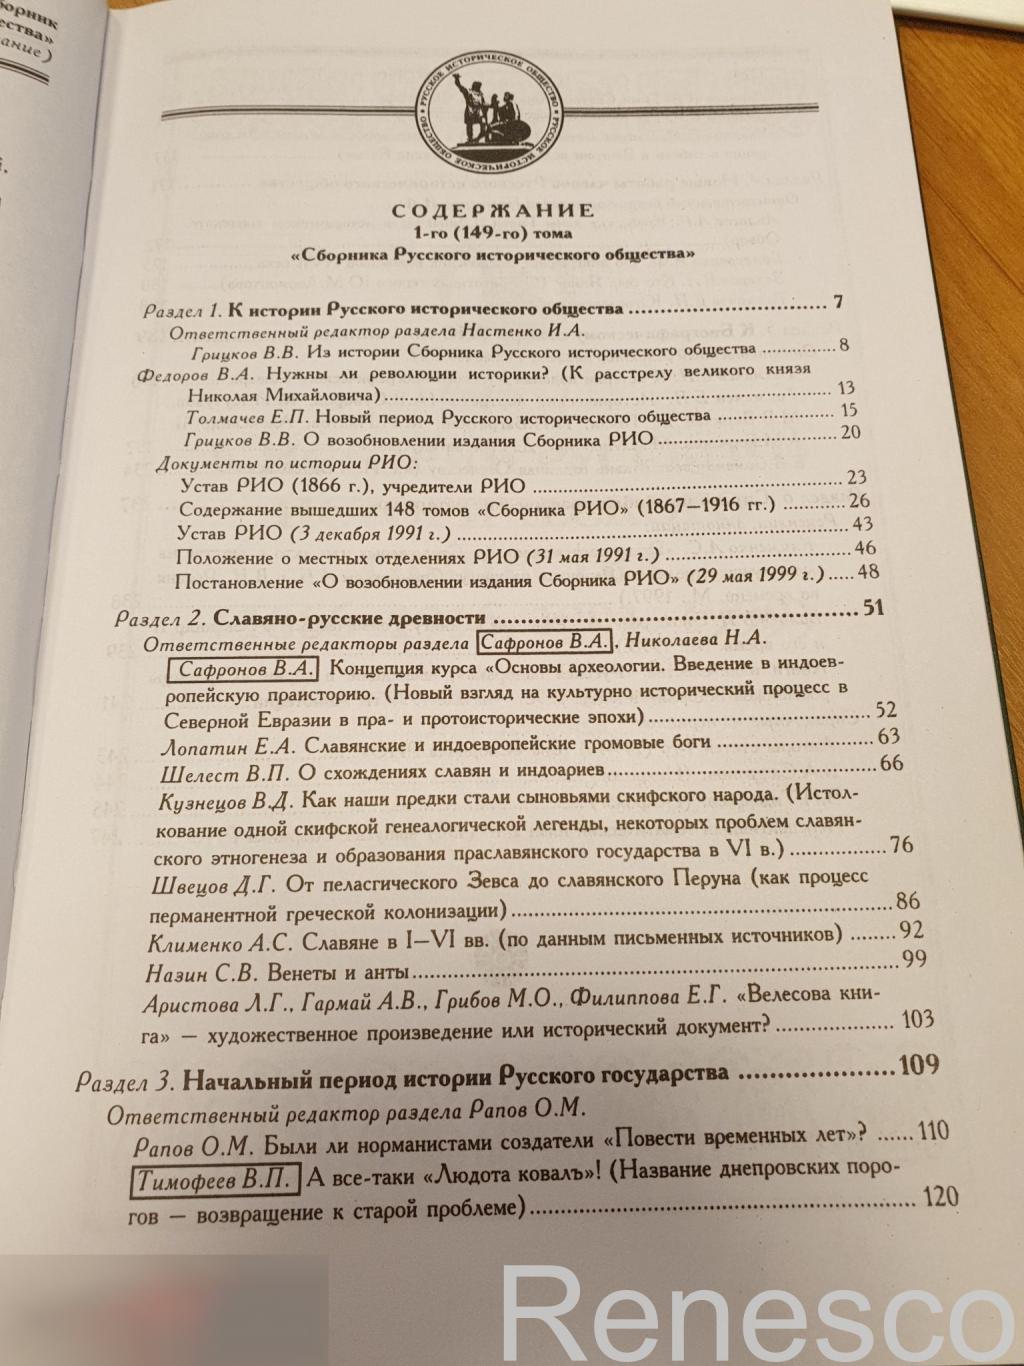 Сборник Русского исторического общества. Том 1 (149) 1999 год 5